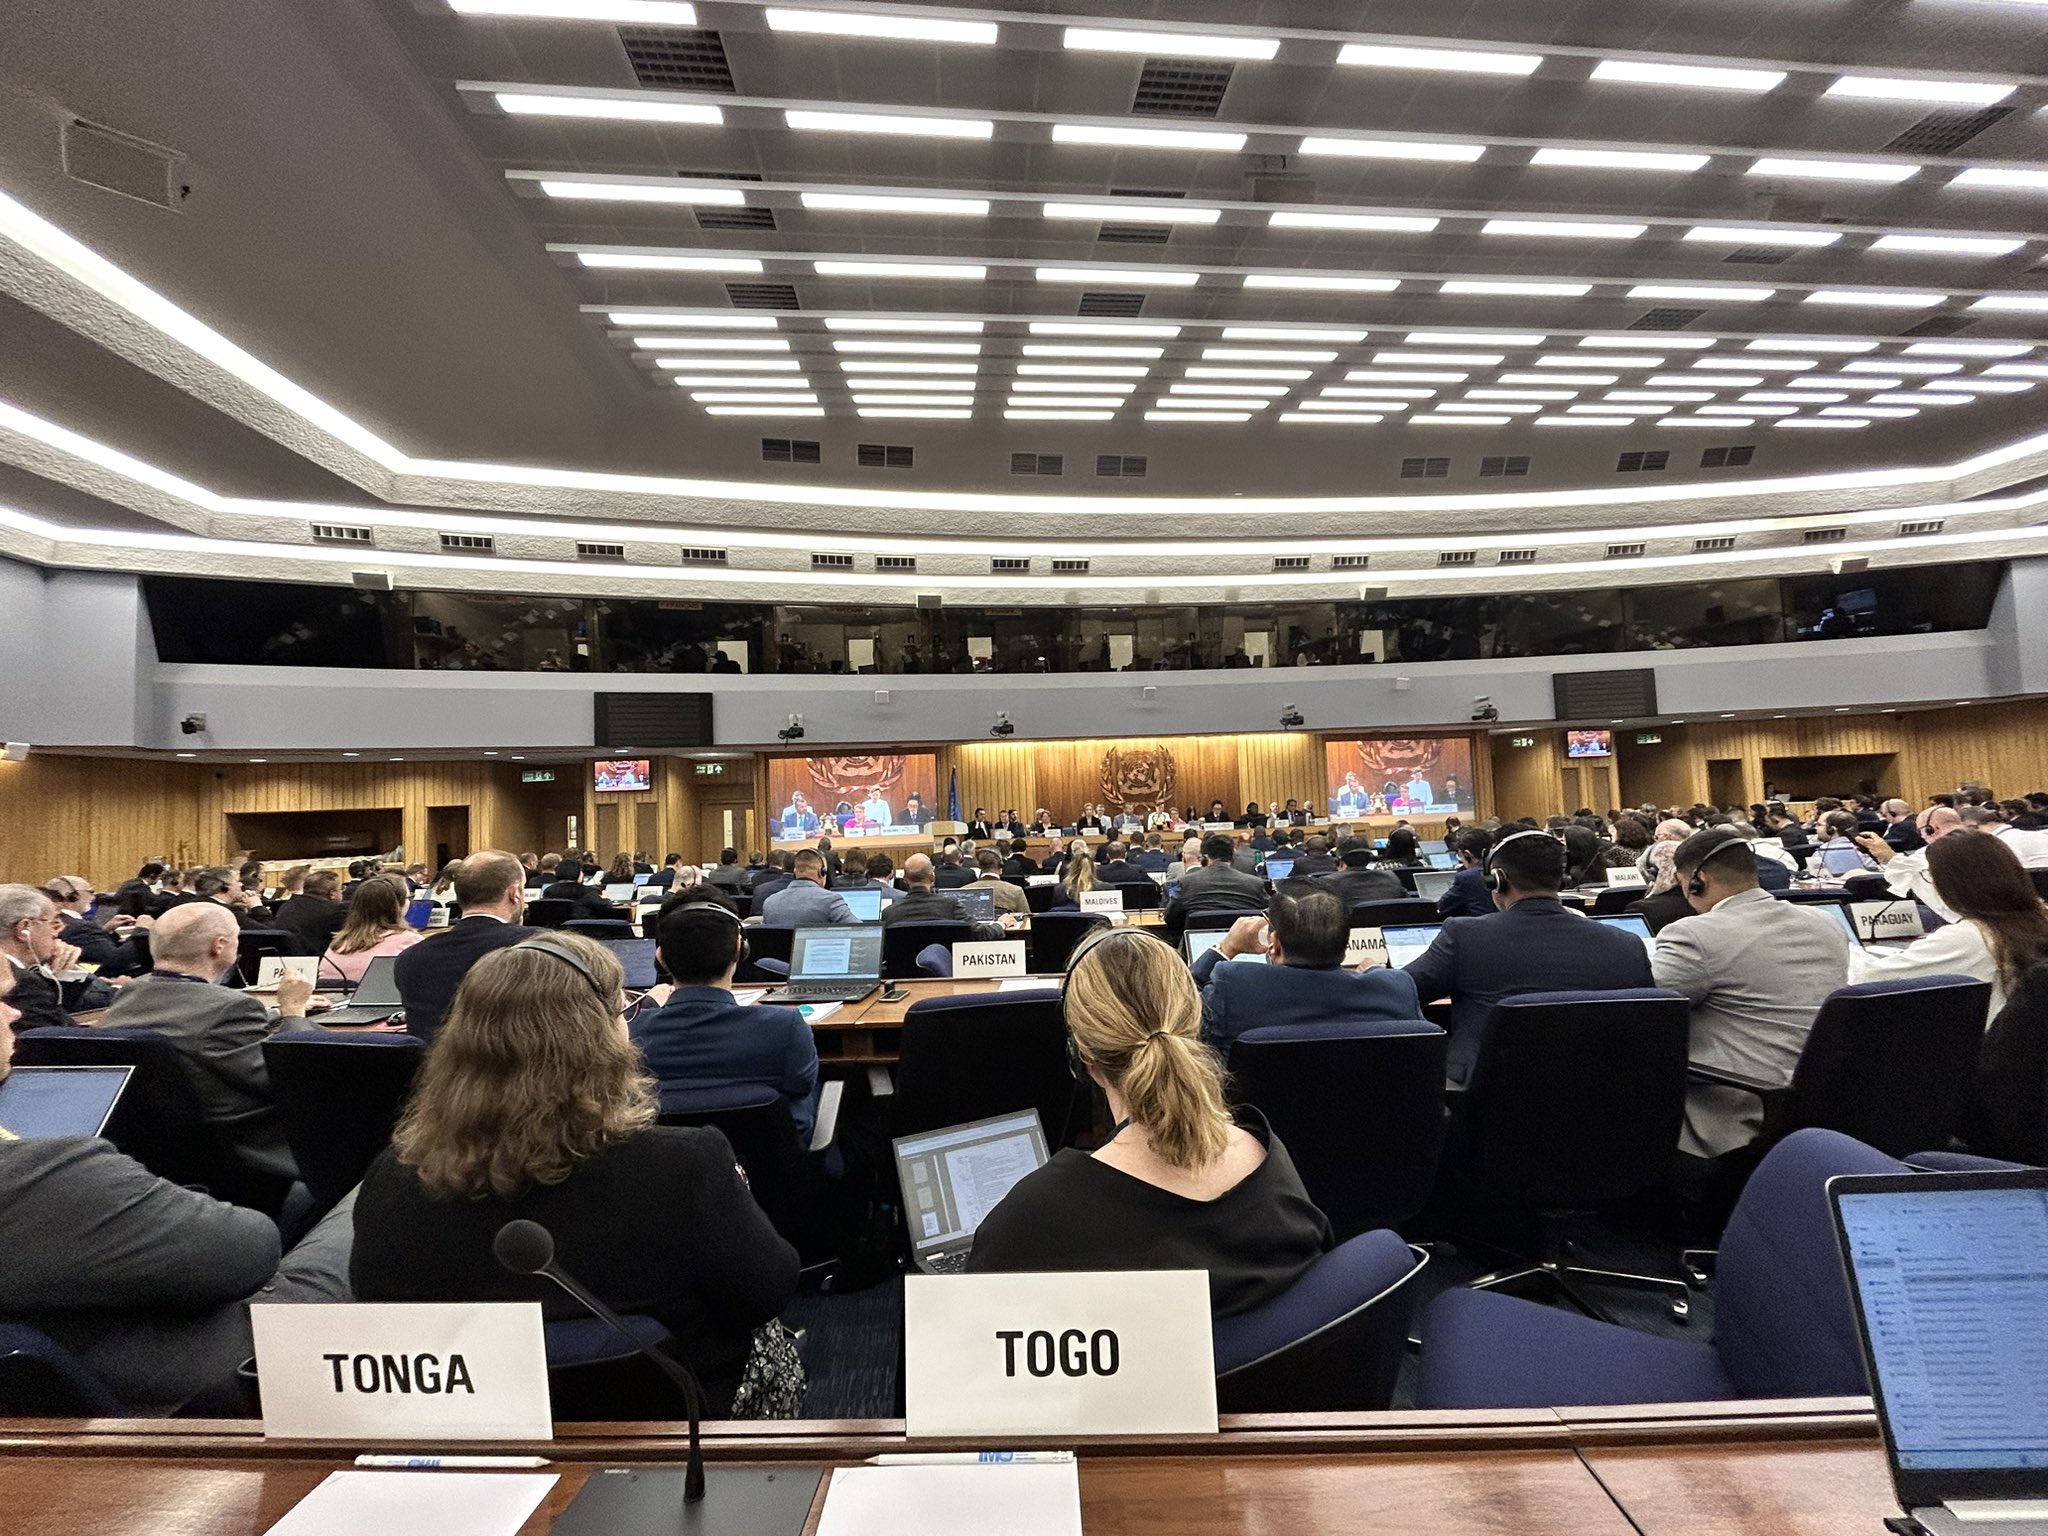 Le Togo s'illustre à la 108e session de l'OMI, où il contribue activement à l'adoption de réglementations pour renforcer la sécurité maritime